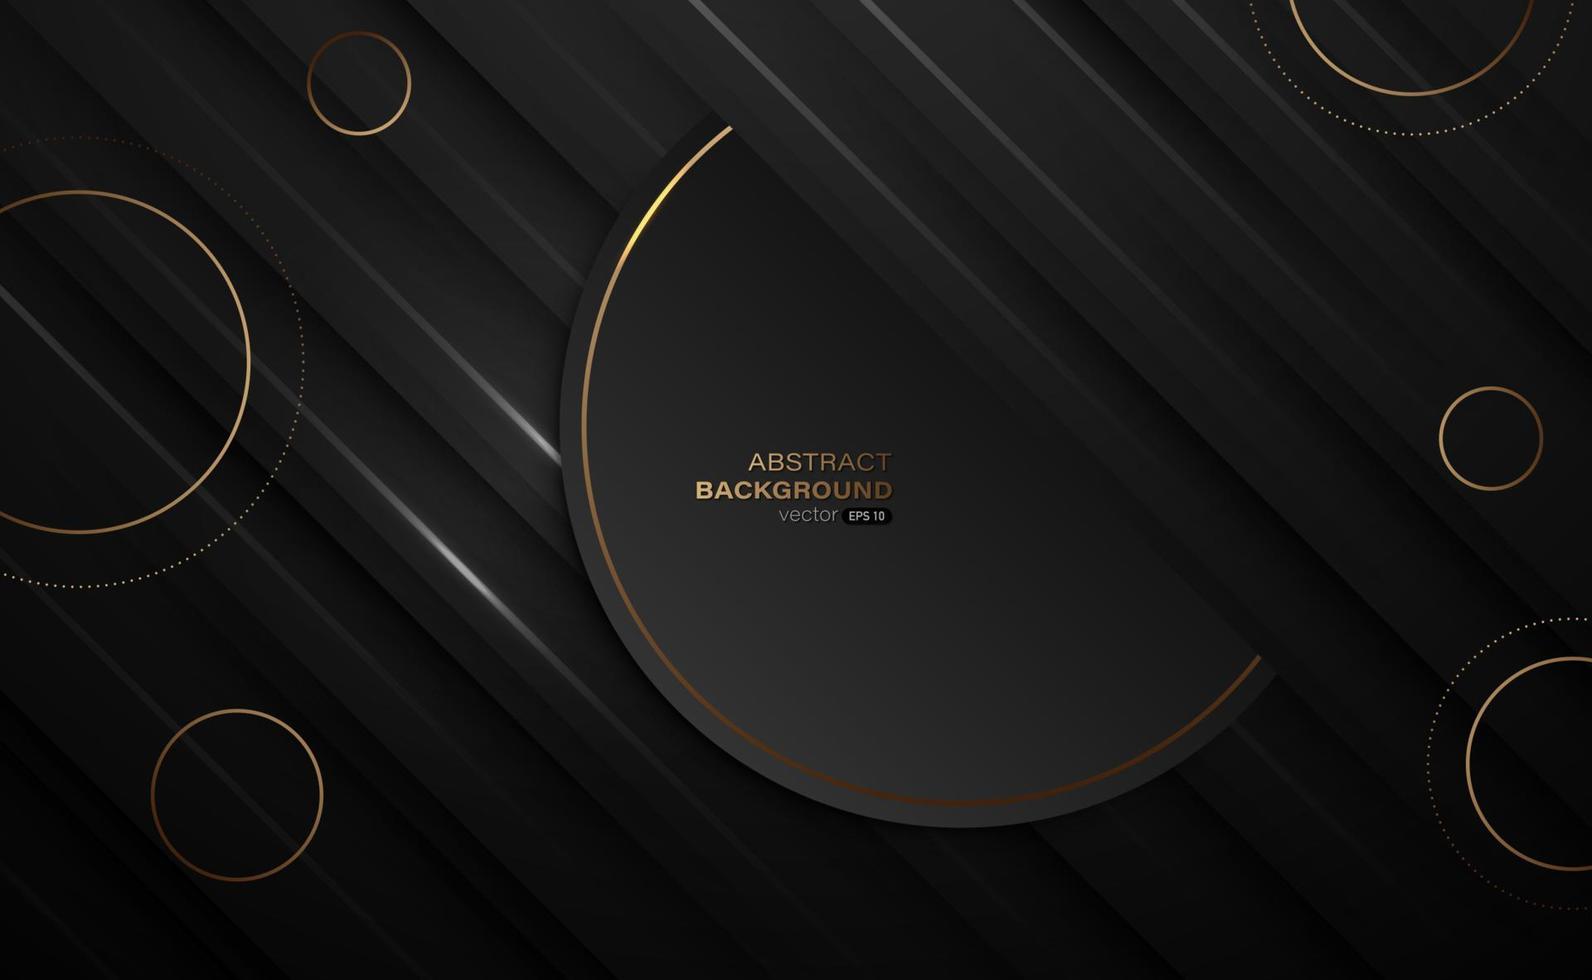 capas superpuestas negras abstractas y fondo de círculos dorados de lujo. ilustración vectorial vector